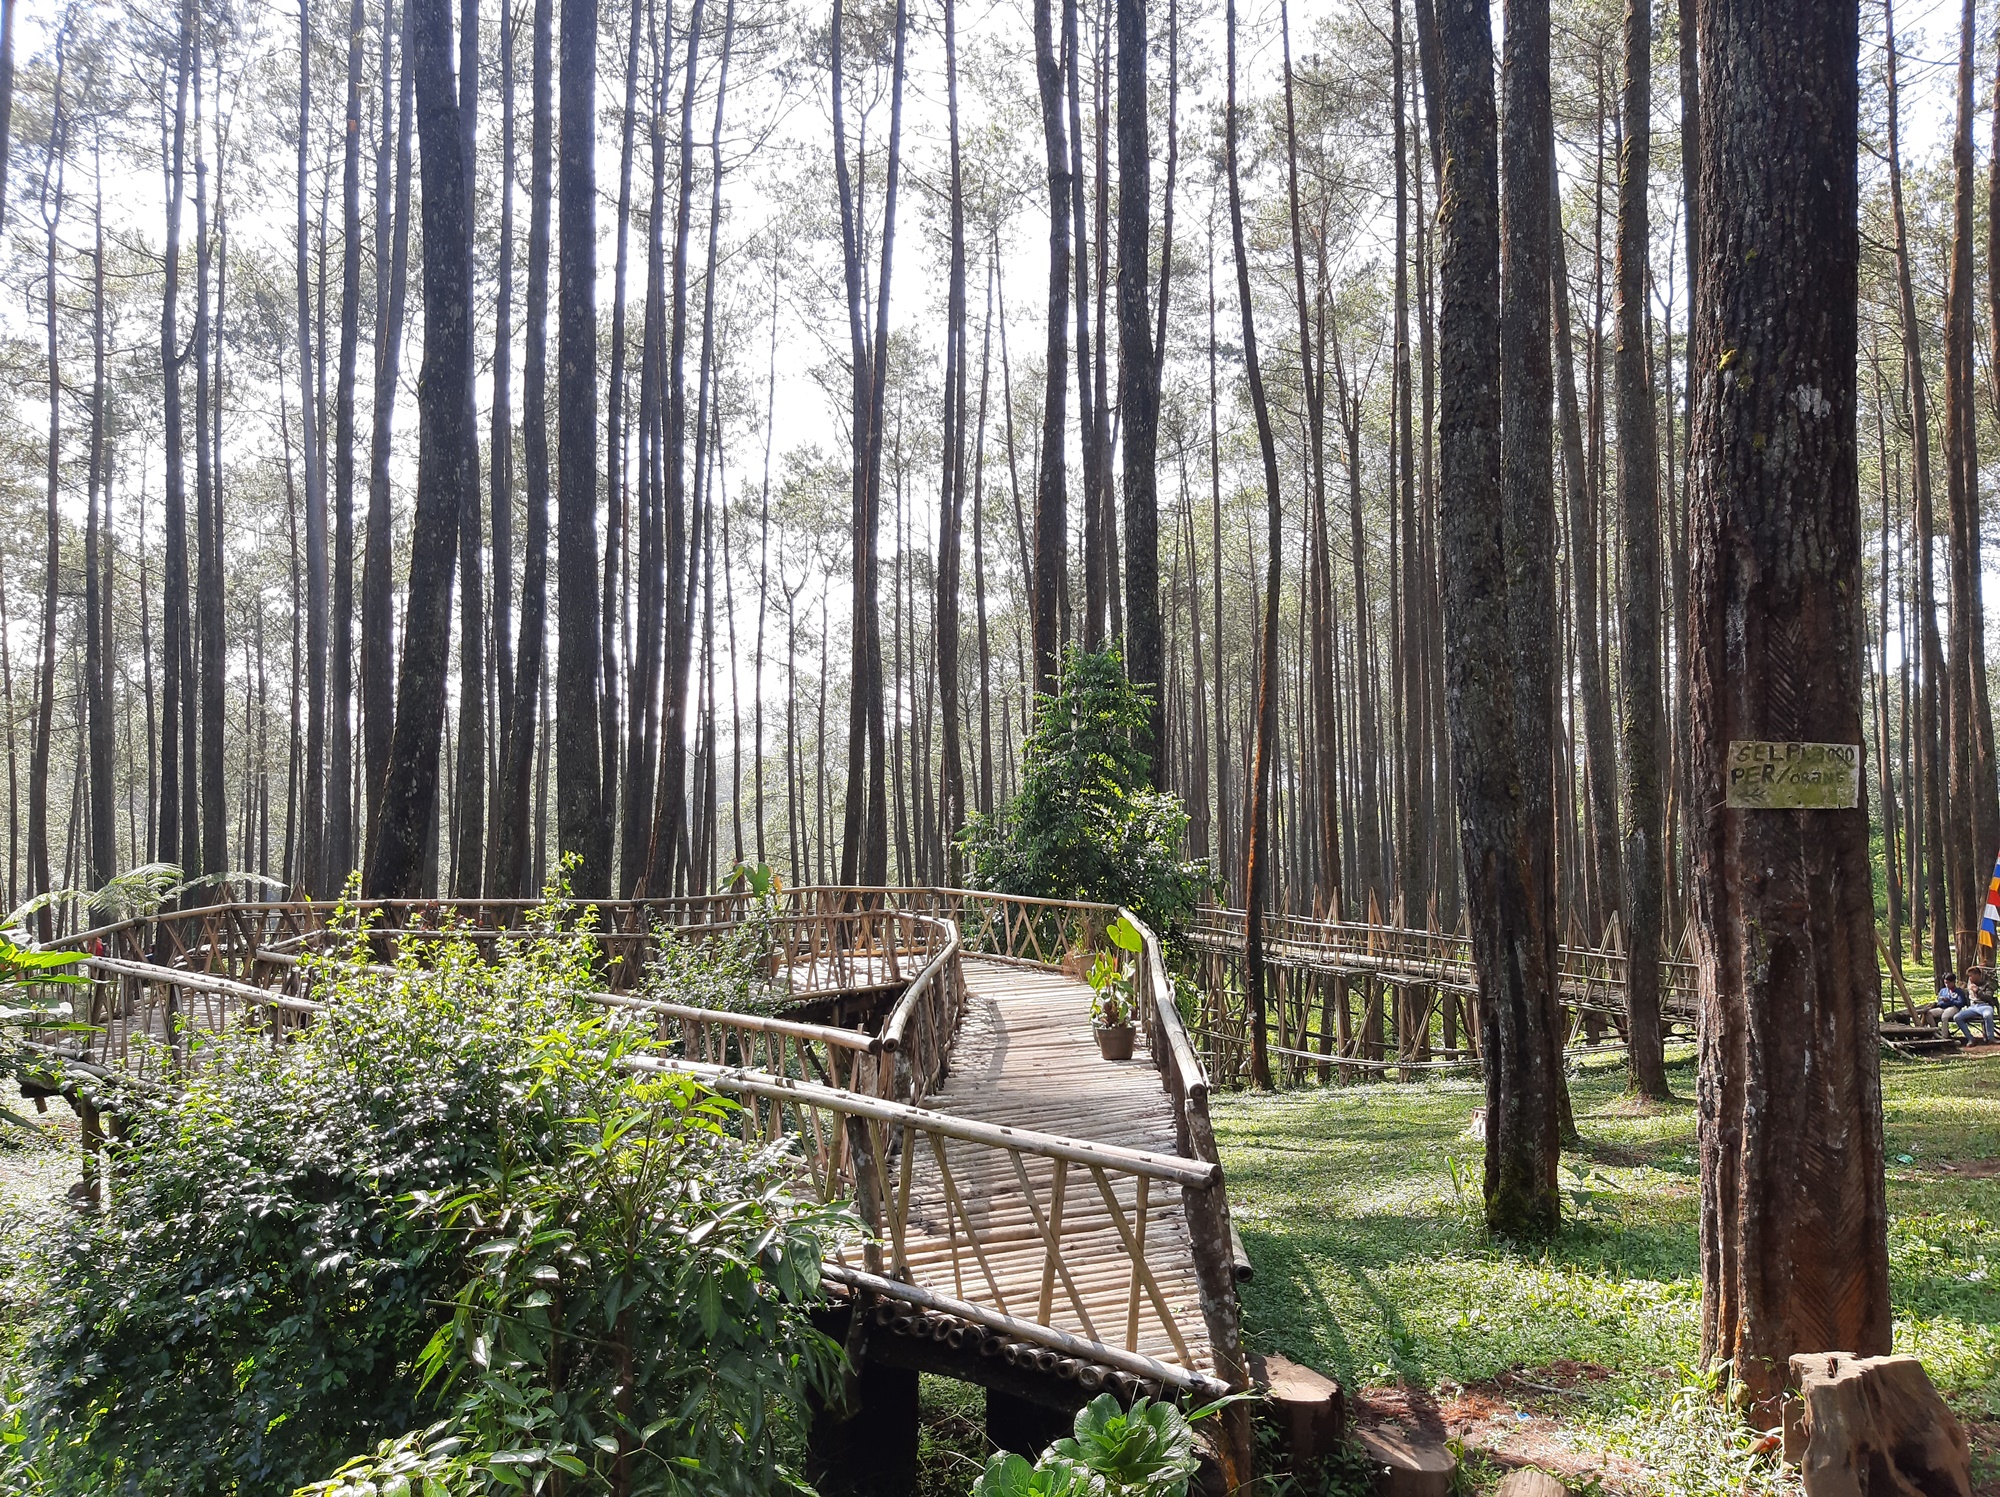 Hutan Pinus Cikole tempat wisata di Bandung berhawa sejuk